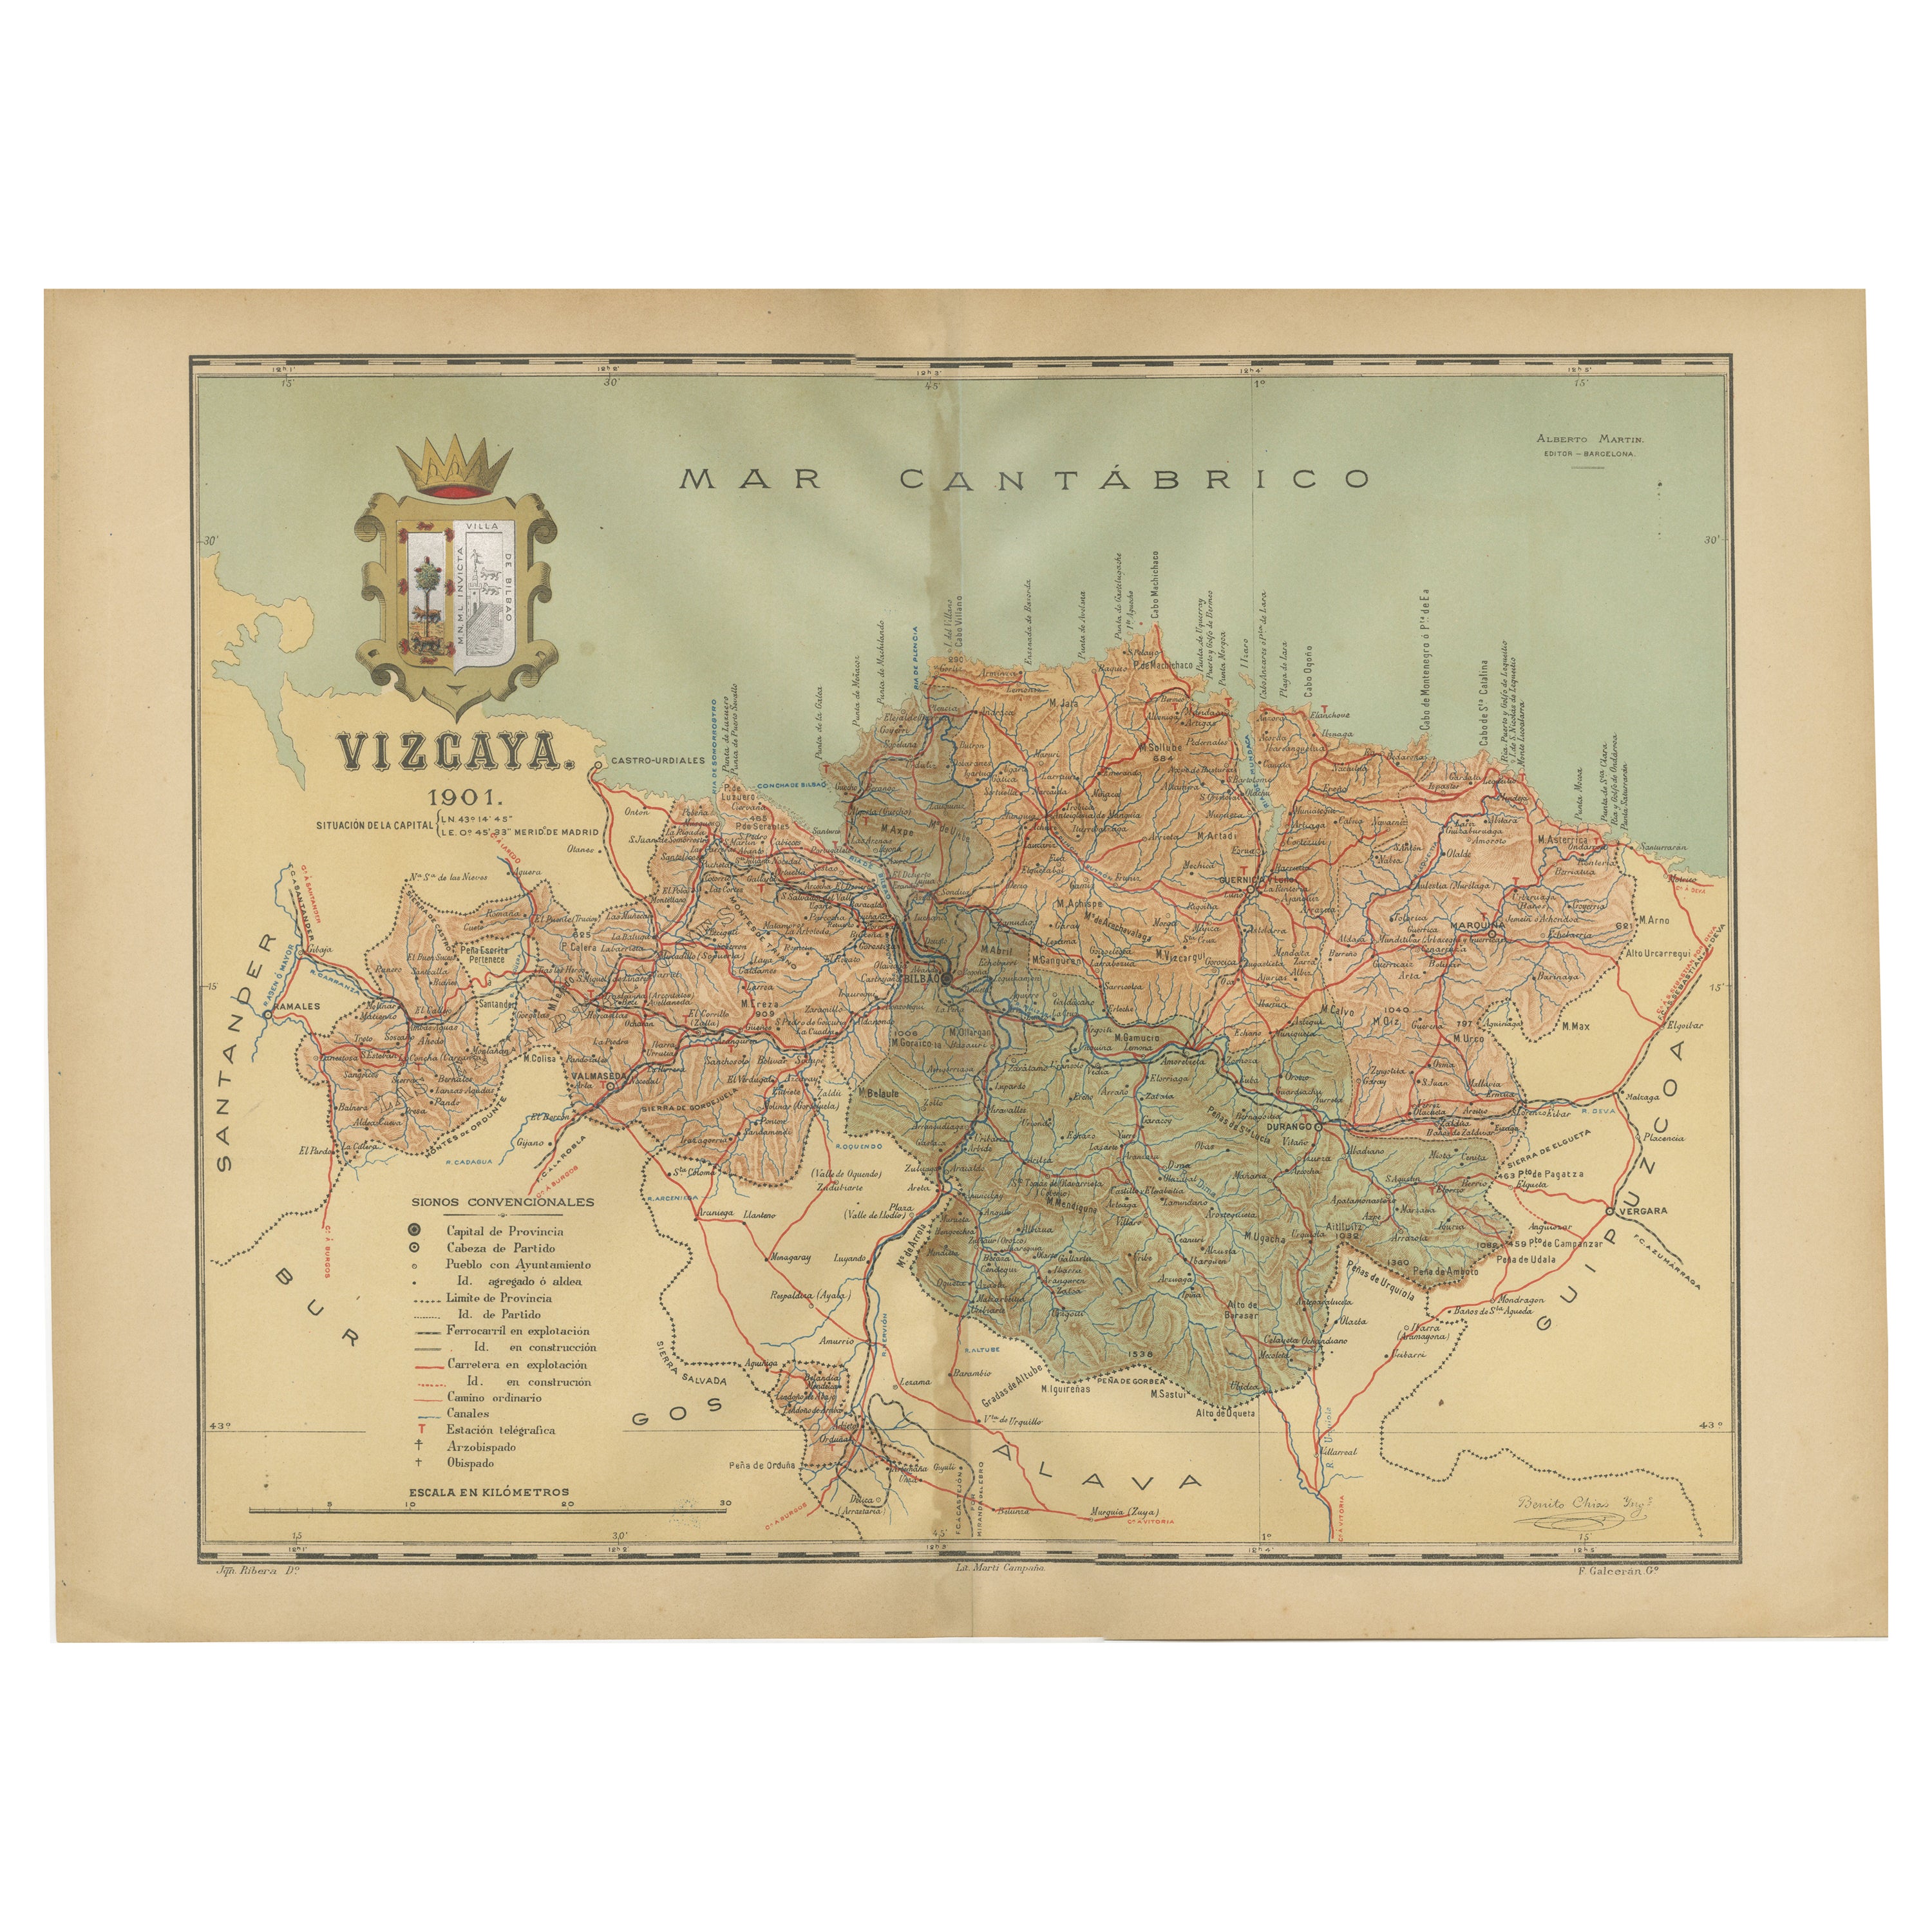 Cartographisches Erbe: Die Karte der Provinz Vizcaya von 1901 in Spanien